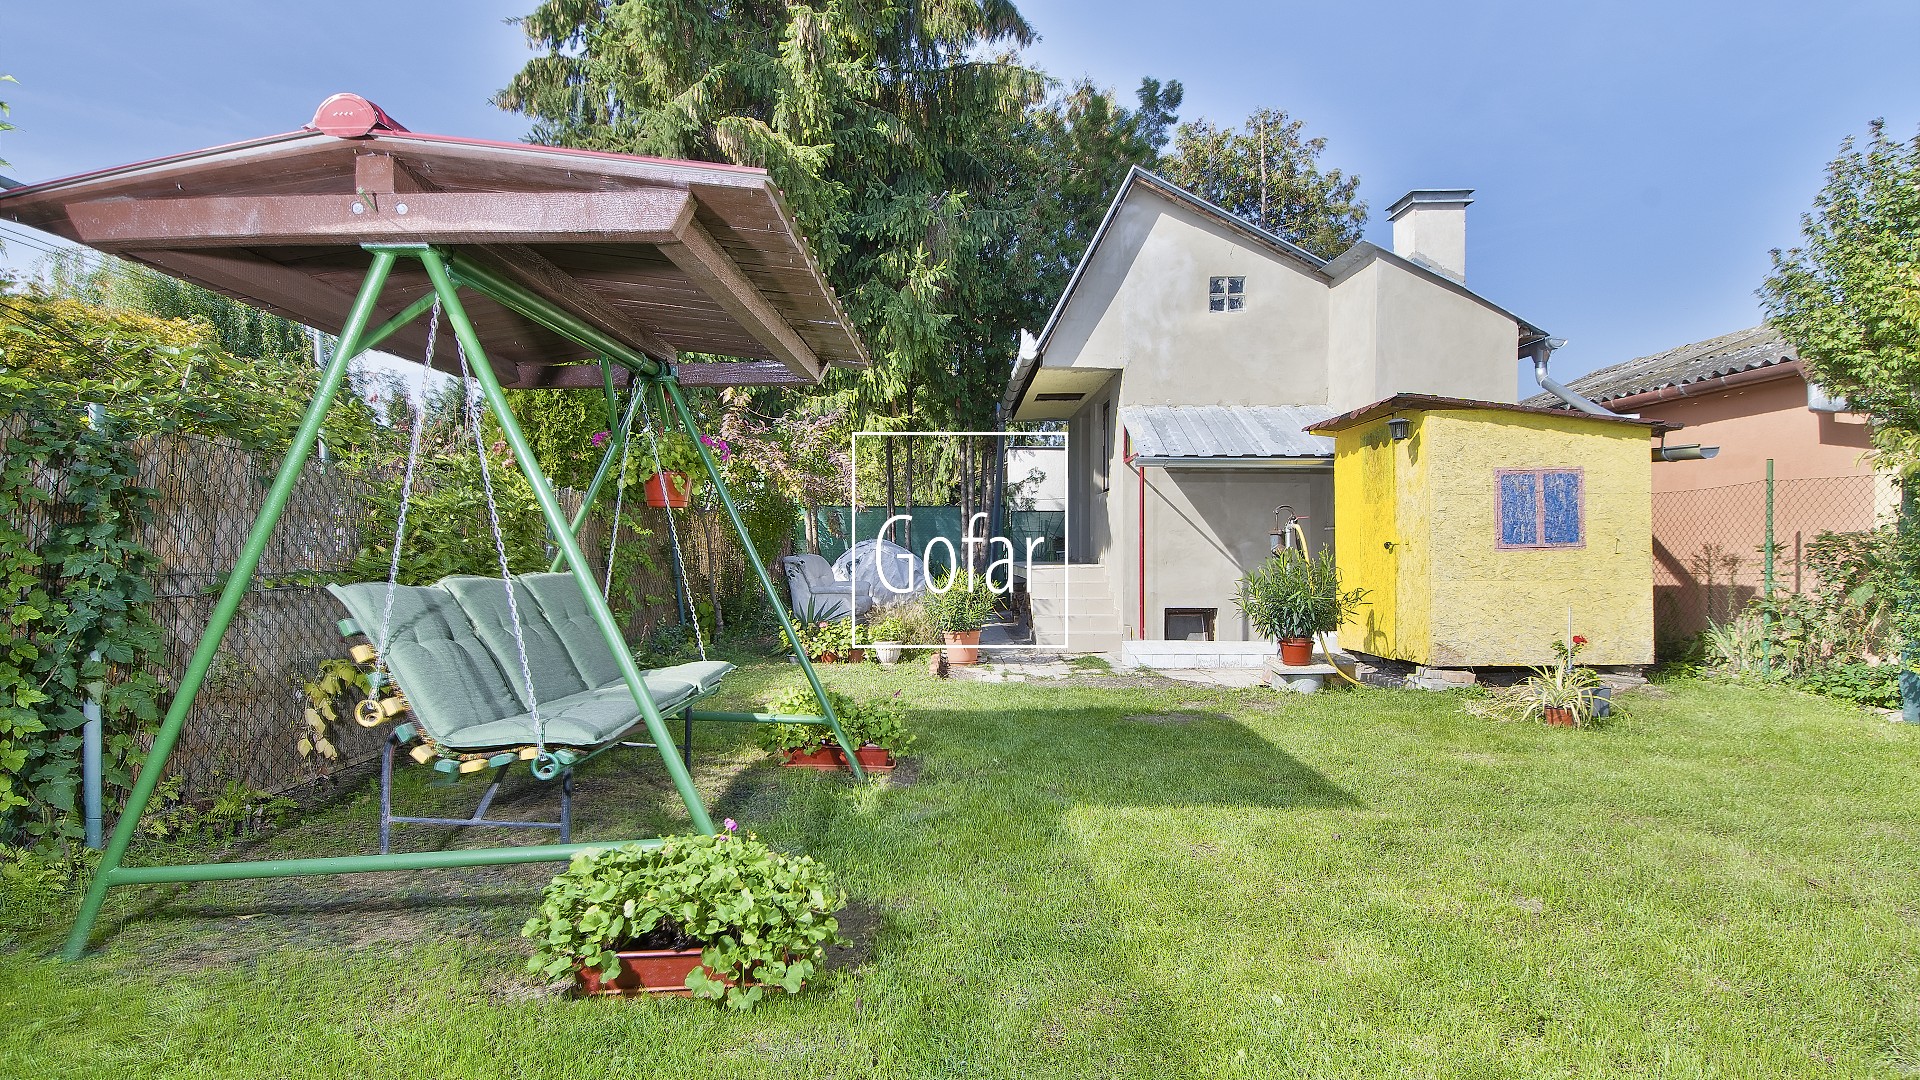 Predané |GOFAR | Predaj - Udržiavaná záhrada s murovanou chatou na Malodvorníckej ceste v Dunajskej Strede | Exkluzívne